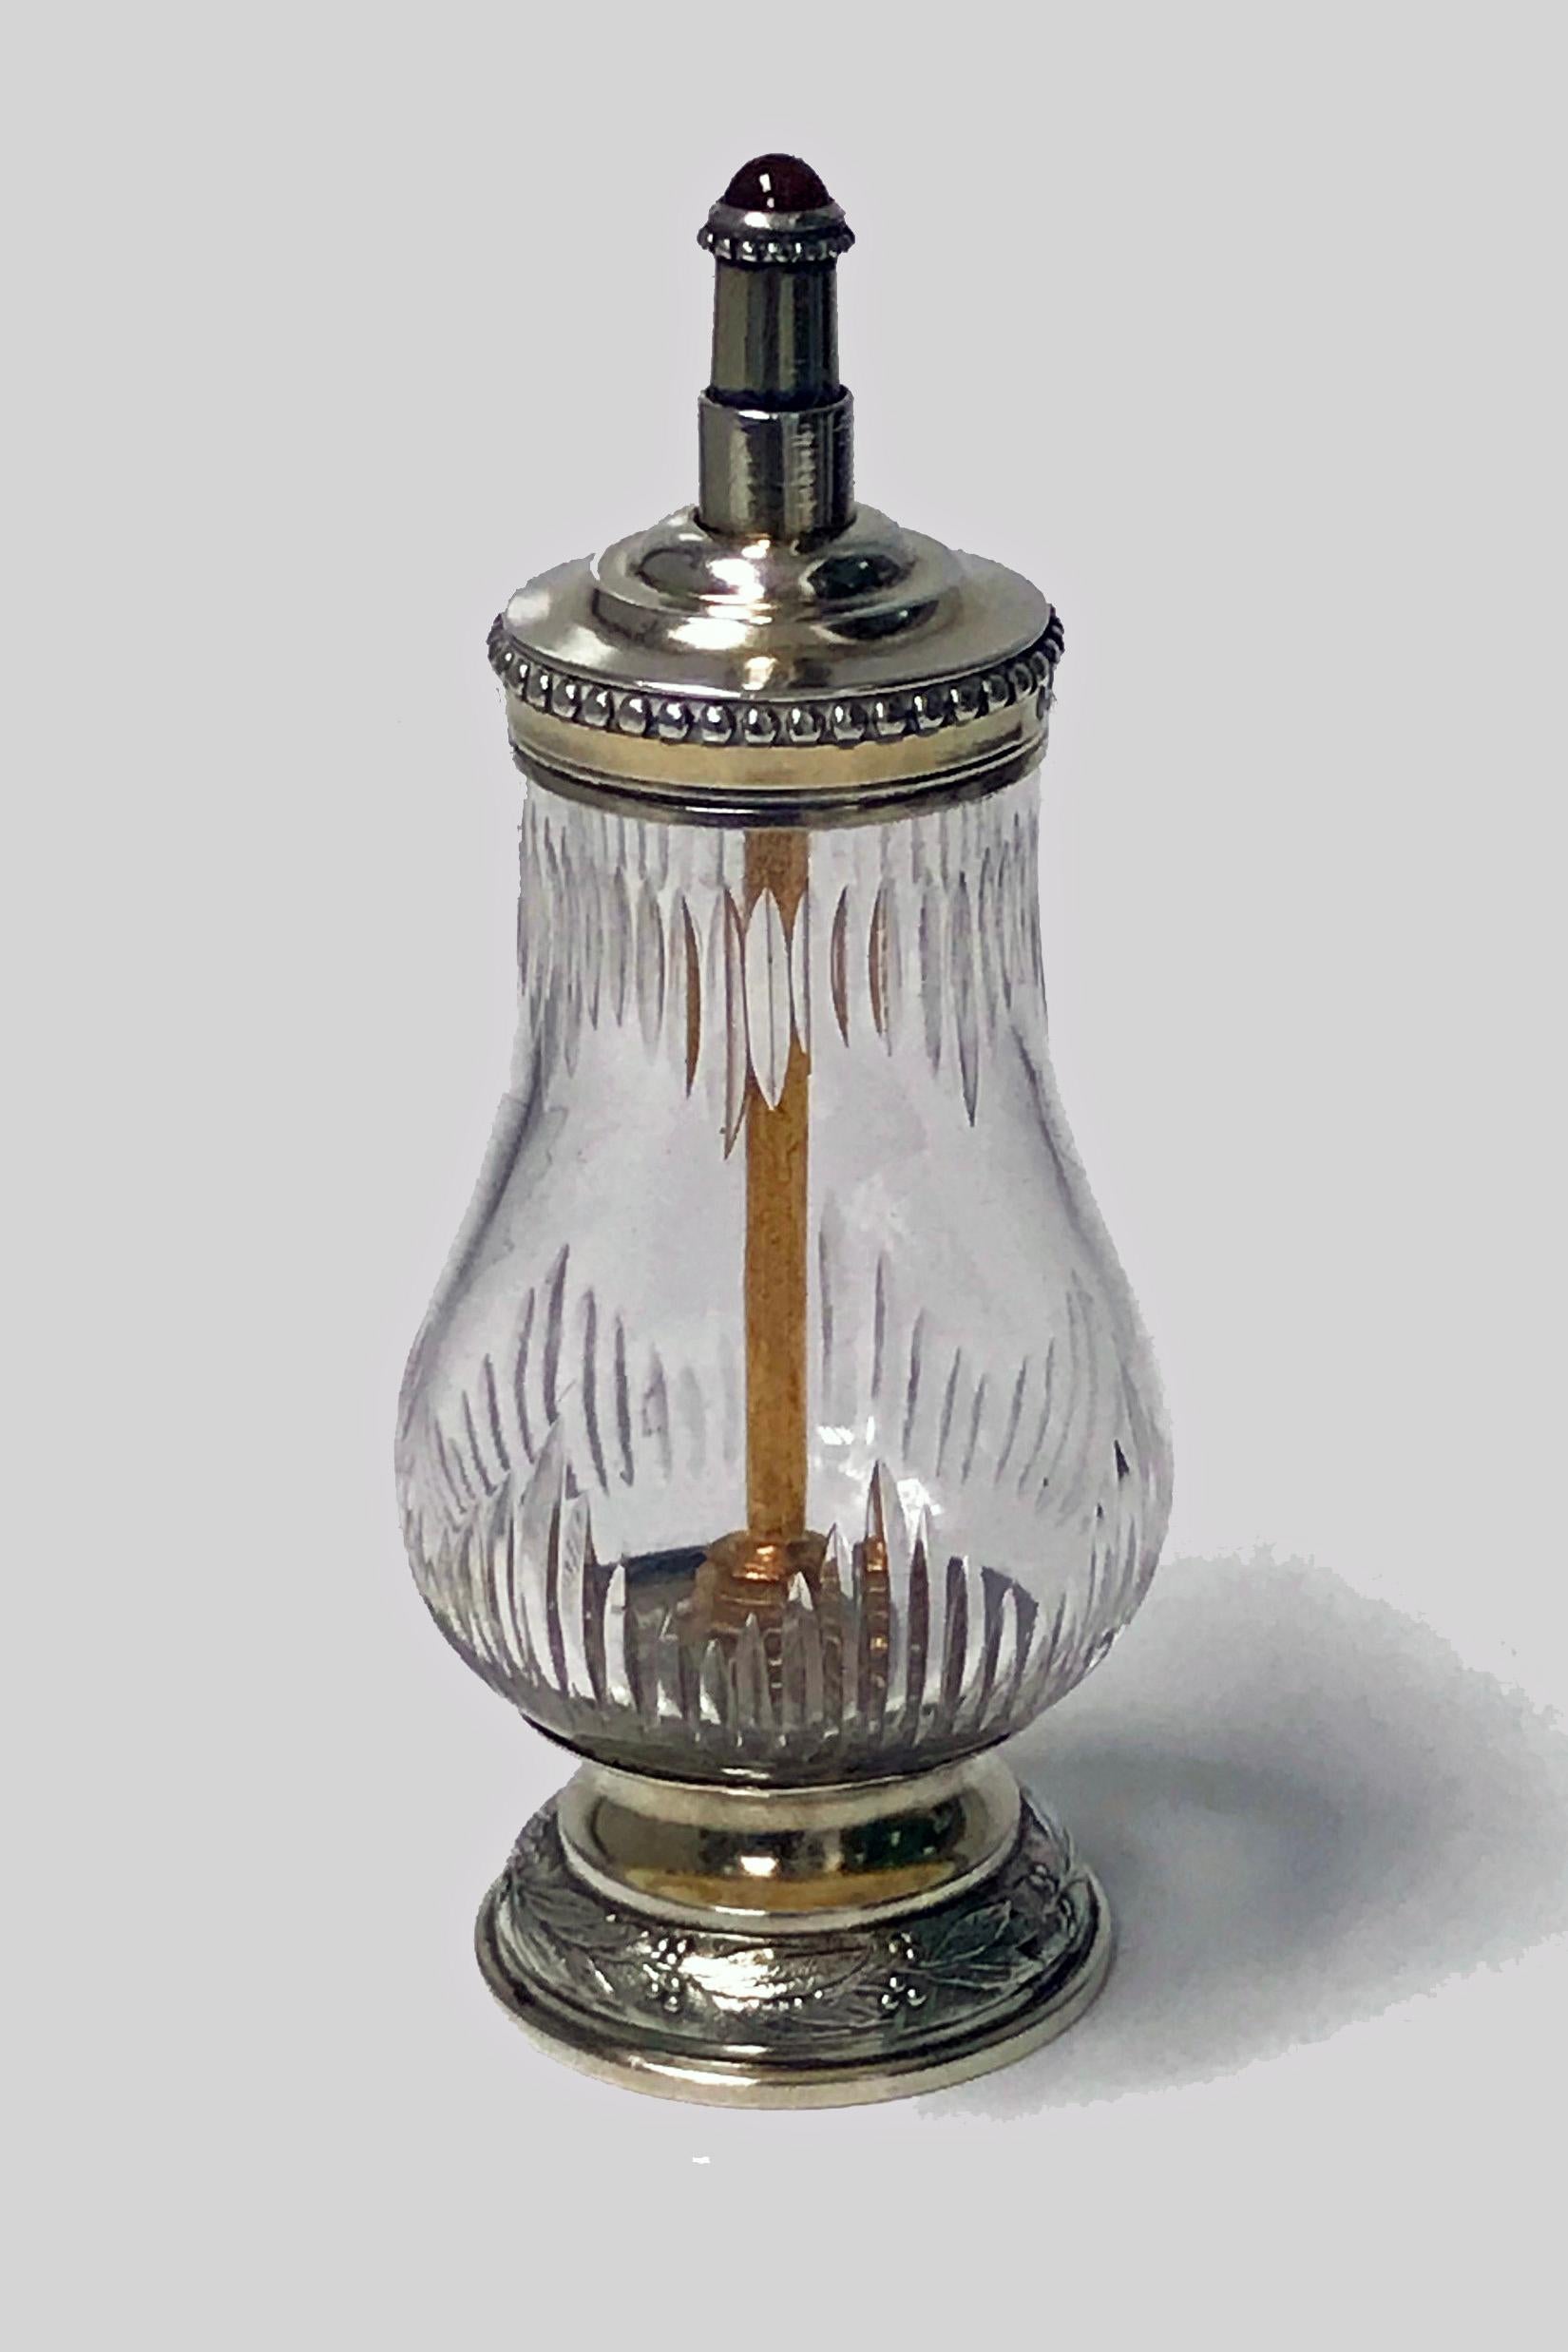 Unusual Antique silver vermeil glass Pepper Grinder, Sampson Mordan import marks, London 1901. La meule est posée sur une base ronde en forme de dôme, le pourtour est orné d'un feuillage en forme de baies, le récipient en verre est de forme balustre